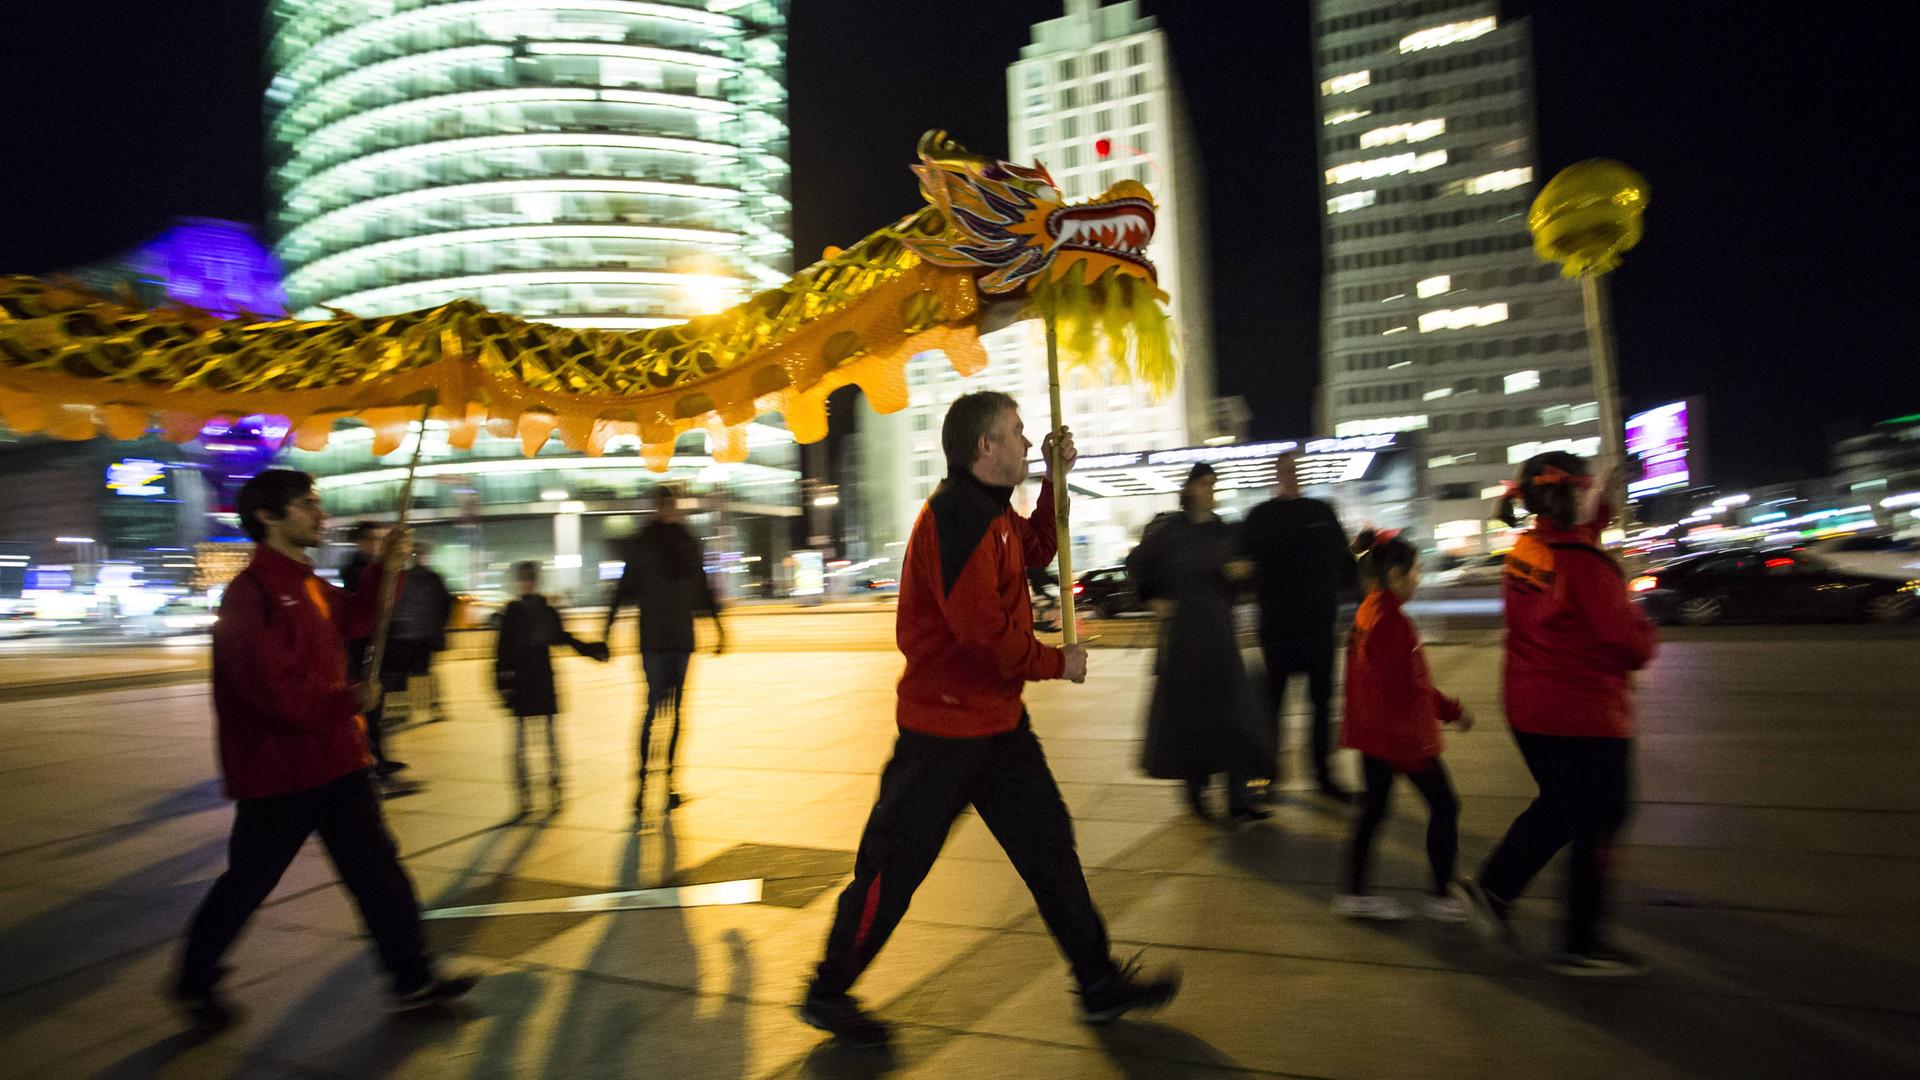 Drachentanz zum chinesischen Neujahr am Potsdamer Platz in Berlin im Jahr 2018: Mehrere Menschen in roten Jacken tragen an Stäben eine Drachenfigur und eine goldene Kugel vor der Kulisse erleuchteter Hochhäuser.  